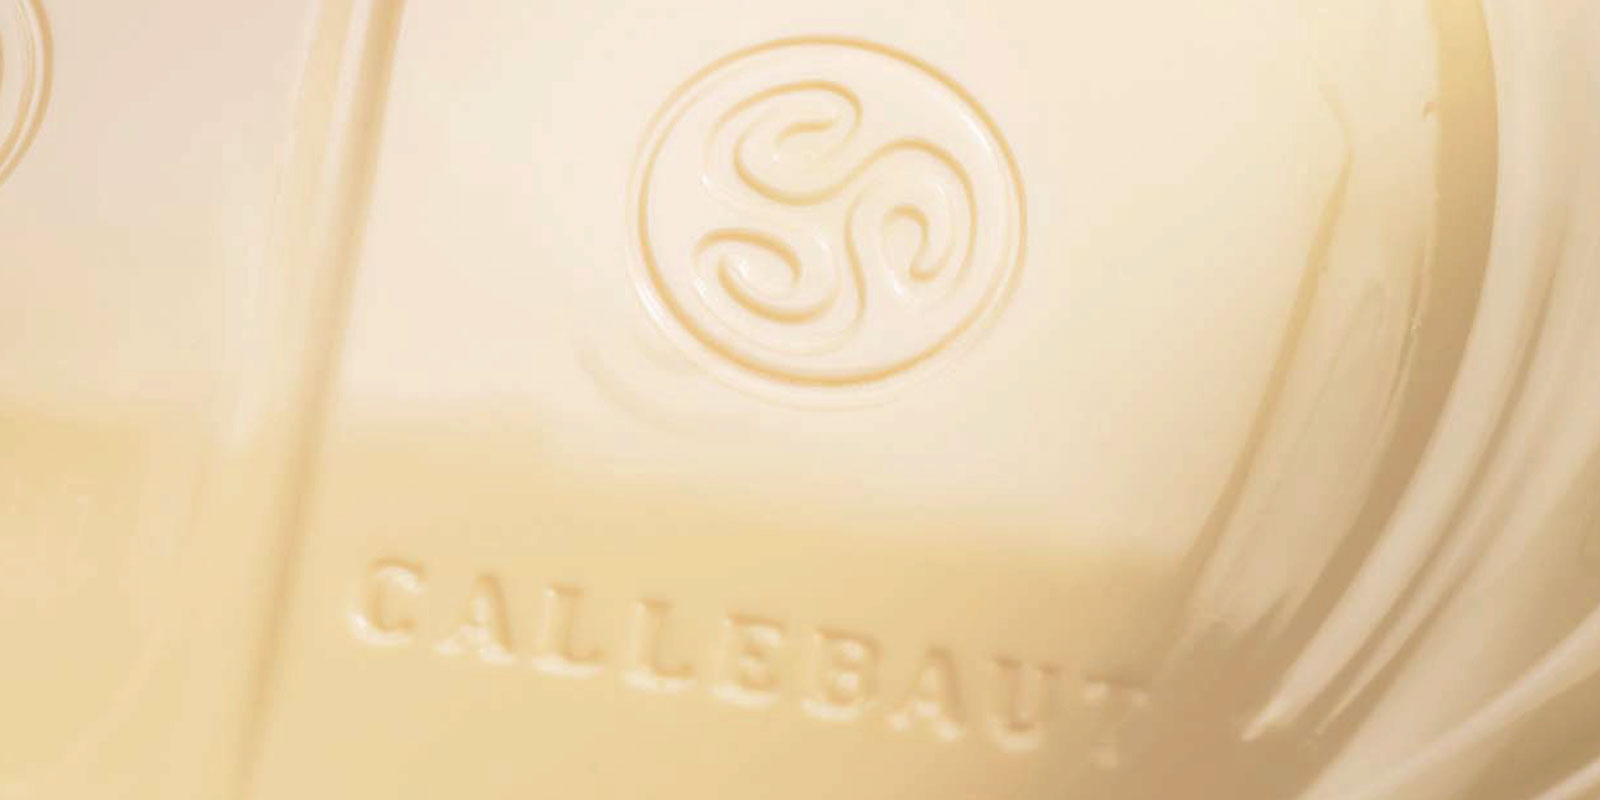 Weisse Schokoladen von Callebaut Weiße Schokolade ist das Ergebnis der Mischung aus Kakaobutter, Milchpulver und Zucker. Das Mischverhältnis dieser Zutaten - aus z.B. Vanillin, Vanille oder Lezithin - bestimmt den Geschmack des Endproduktes.